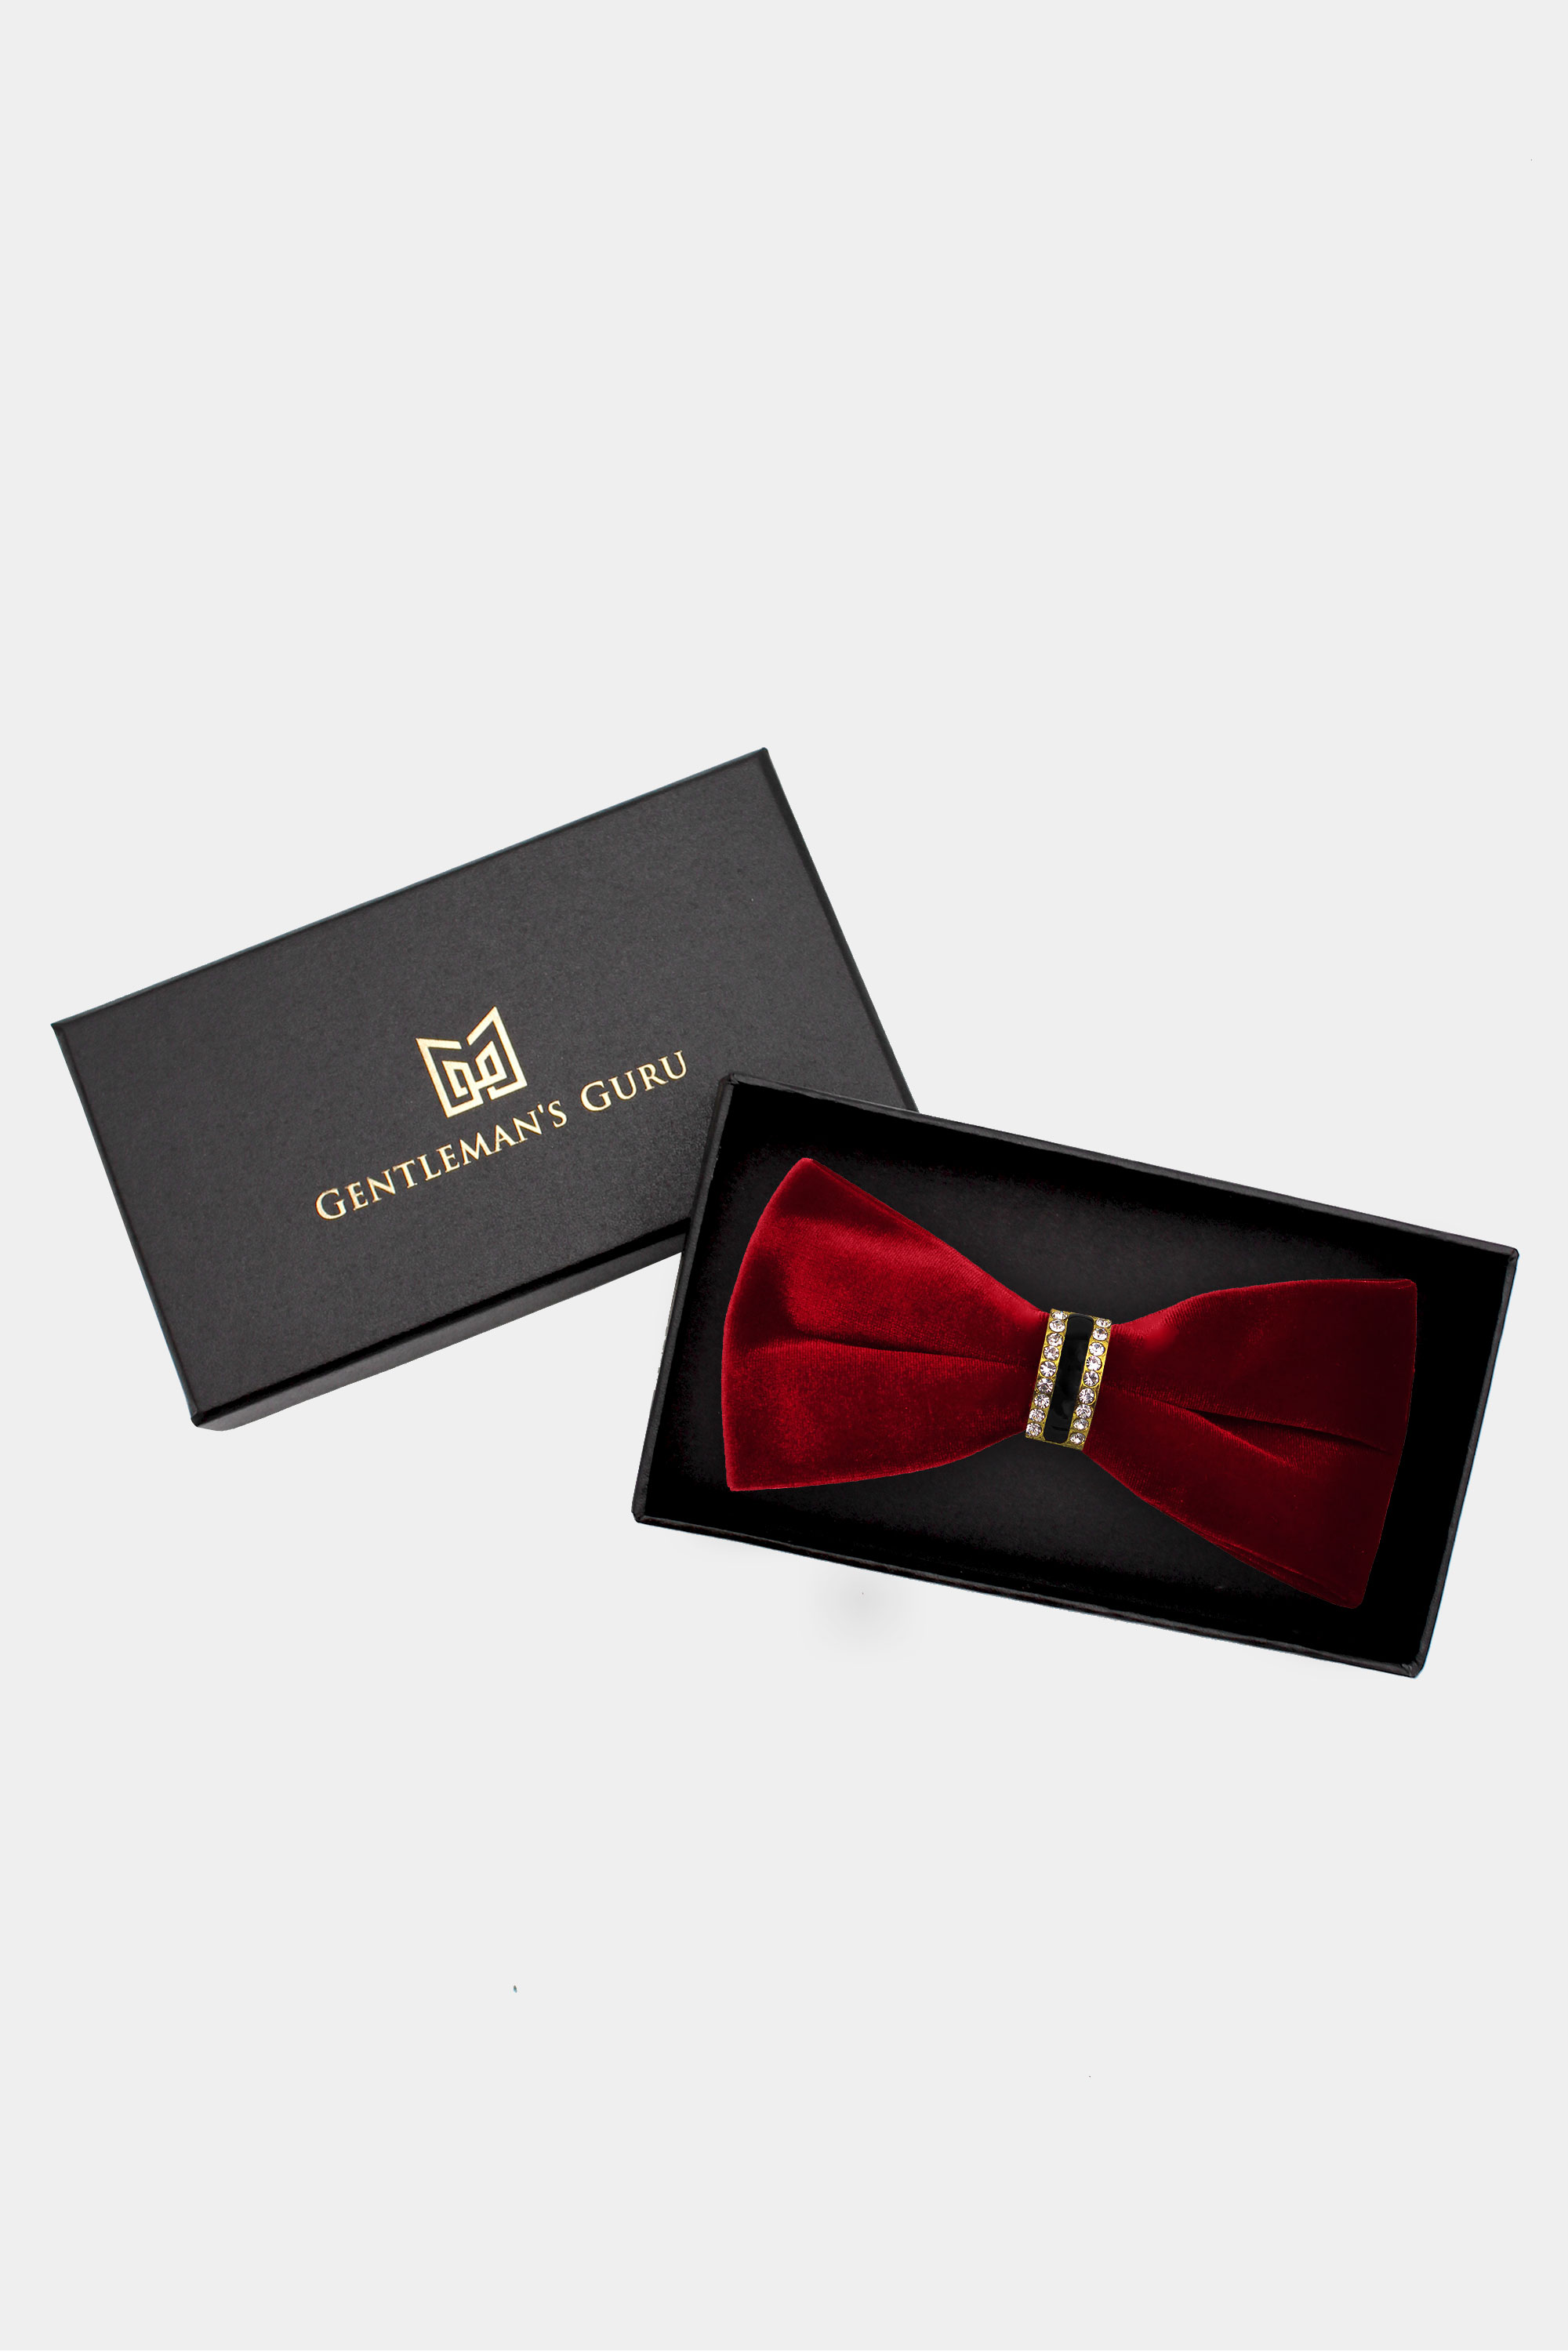 Luxury-Red-Velvet-Bow-Tie-from-Gentlemansguru.com